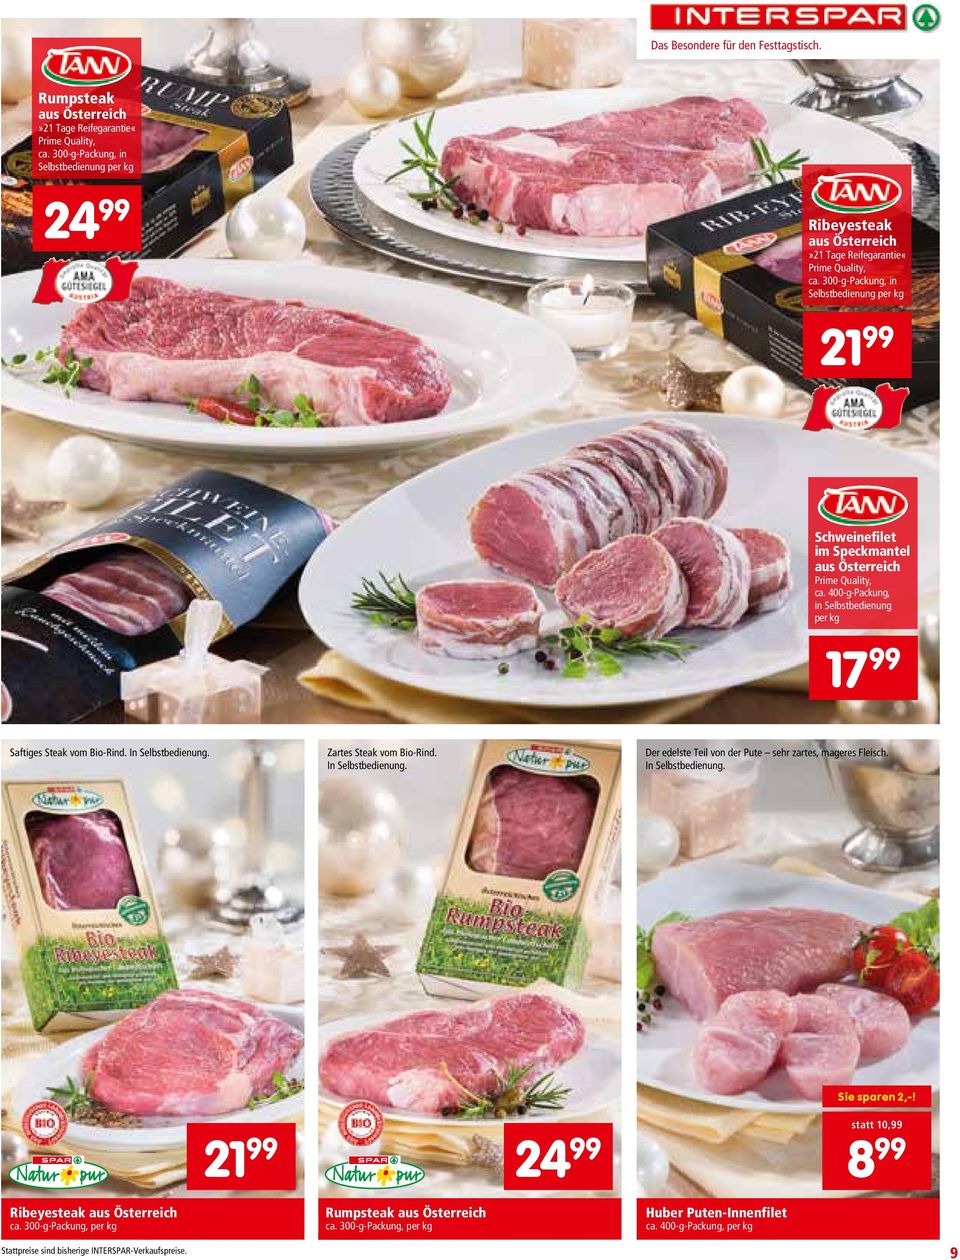 300-g-Packung, in Selbstbedienung per kg 21 99 Schweinefilet im Speckmantel aus Österreich Prime Quality, ca. 400-g-Packung, in Selbstbedienung per kg 17 99 Saftiges Steak vom Bio-Rind.